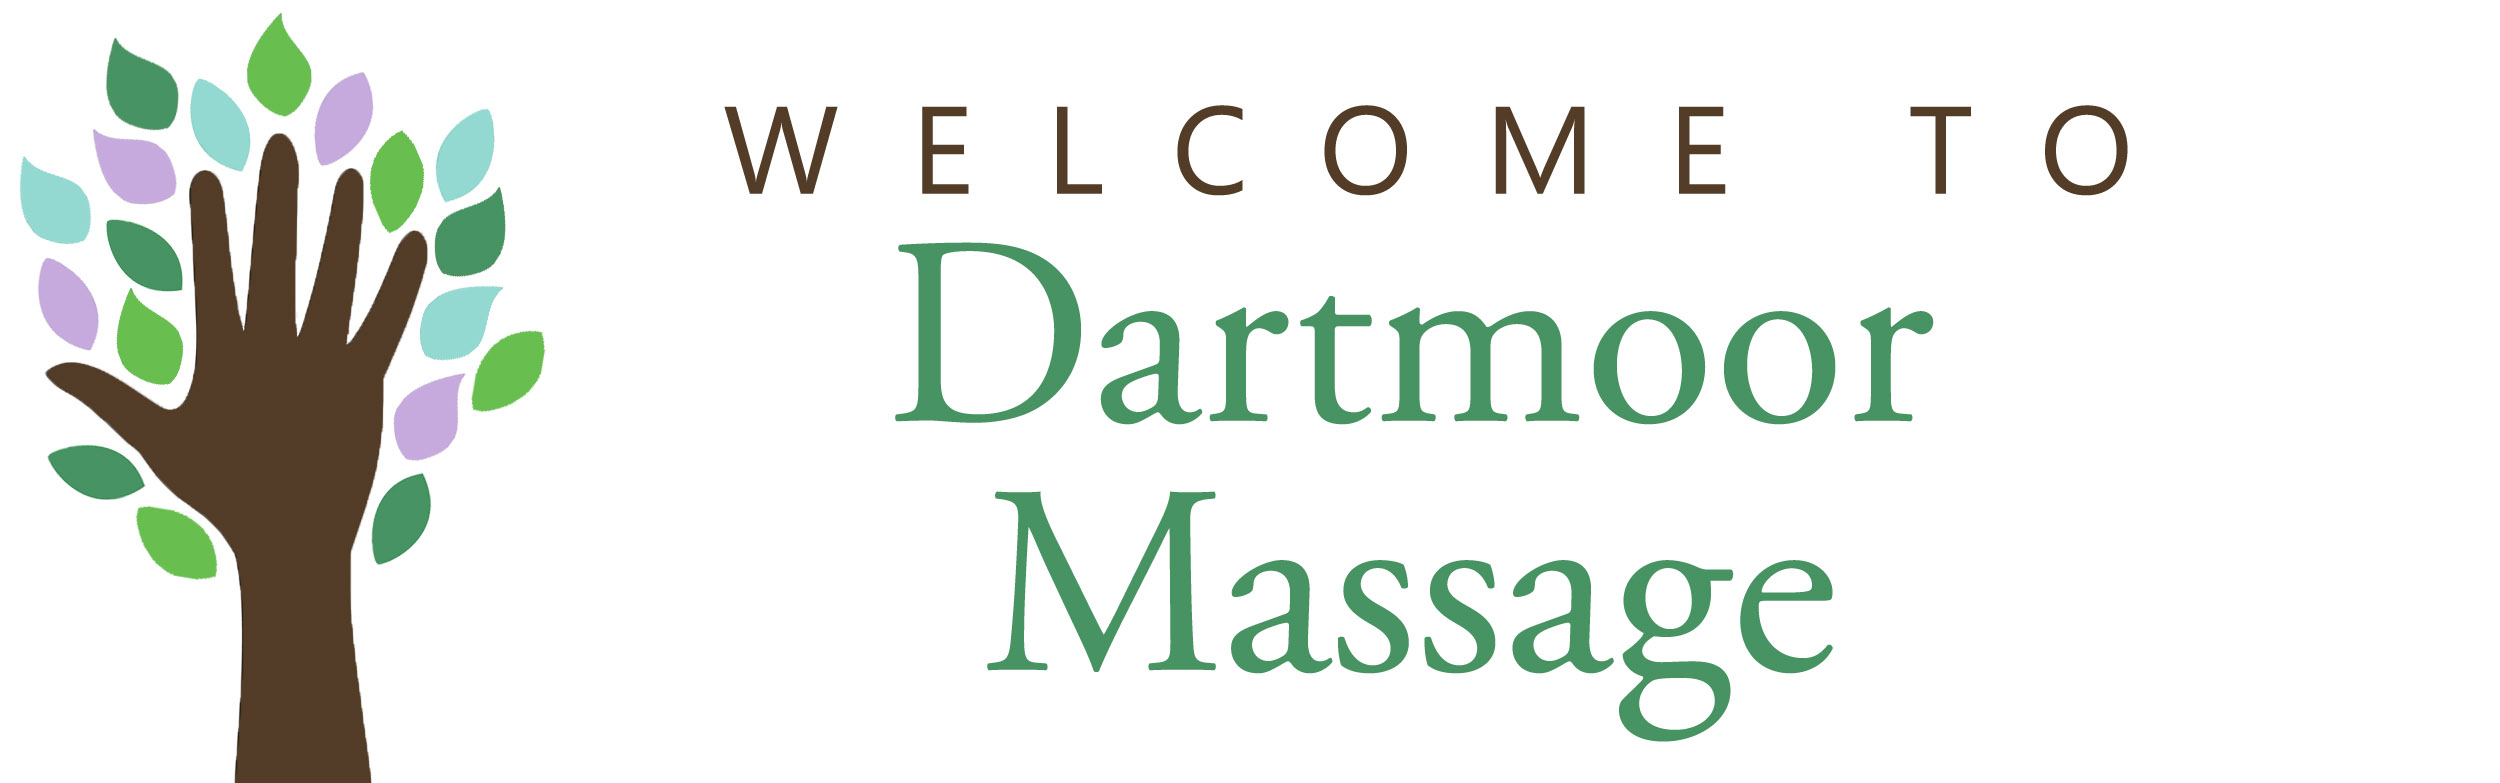 Dartmoor Massage image